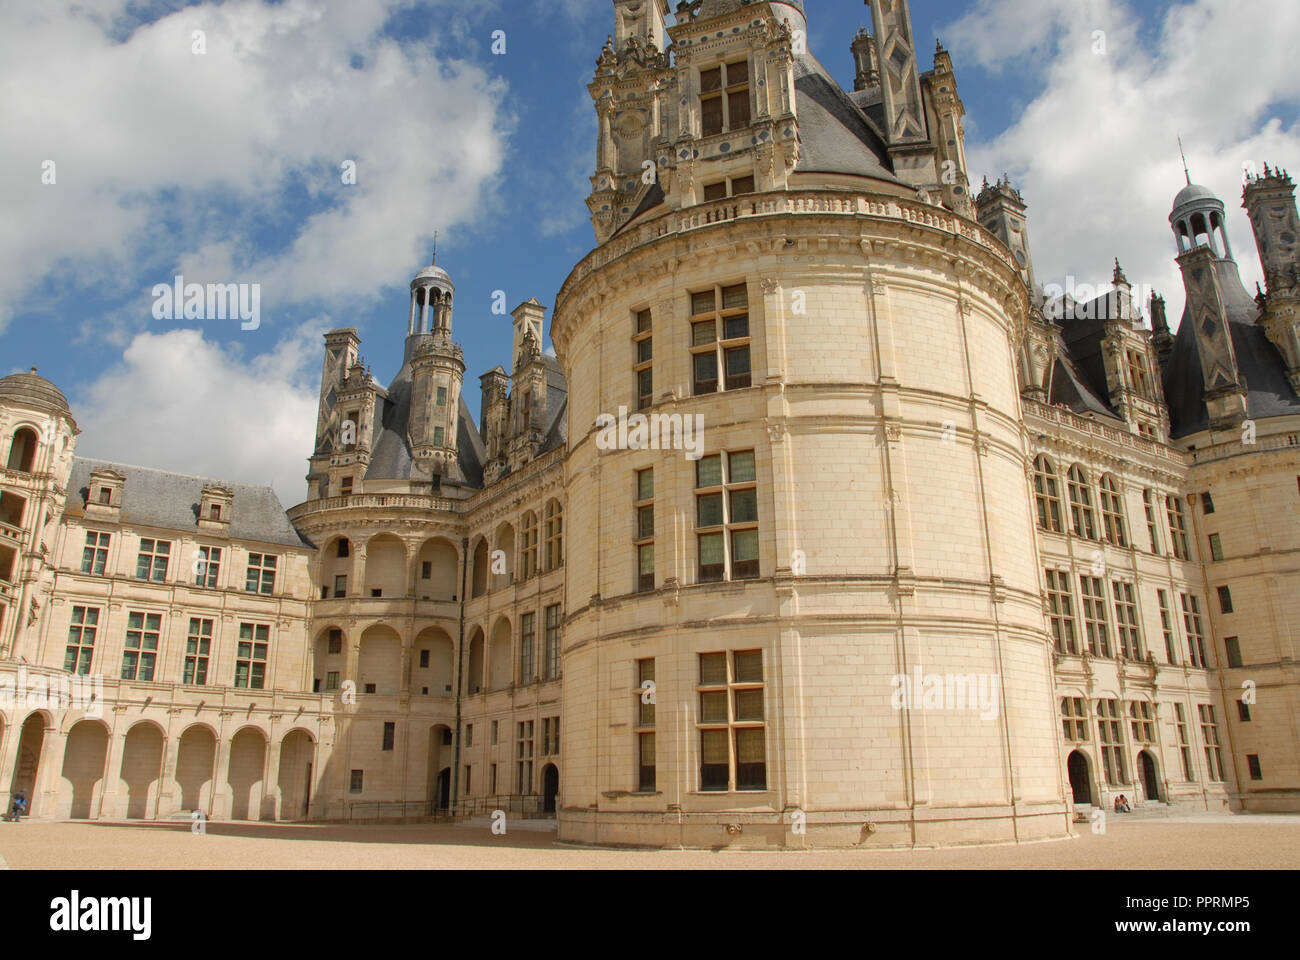 All'interno del cortile del Royal Chateau de Chambord nella Val de Loire (Valle della Loira in Francia. Il castello è uno dei più riconoscibili chat Foto Stock